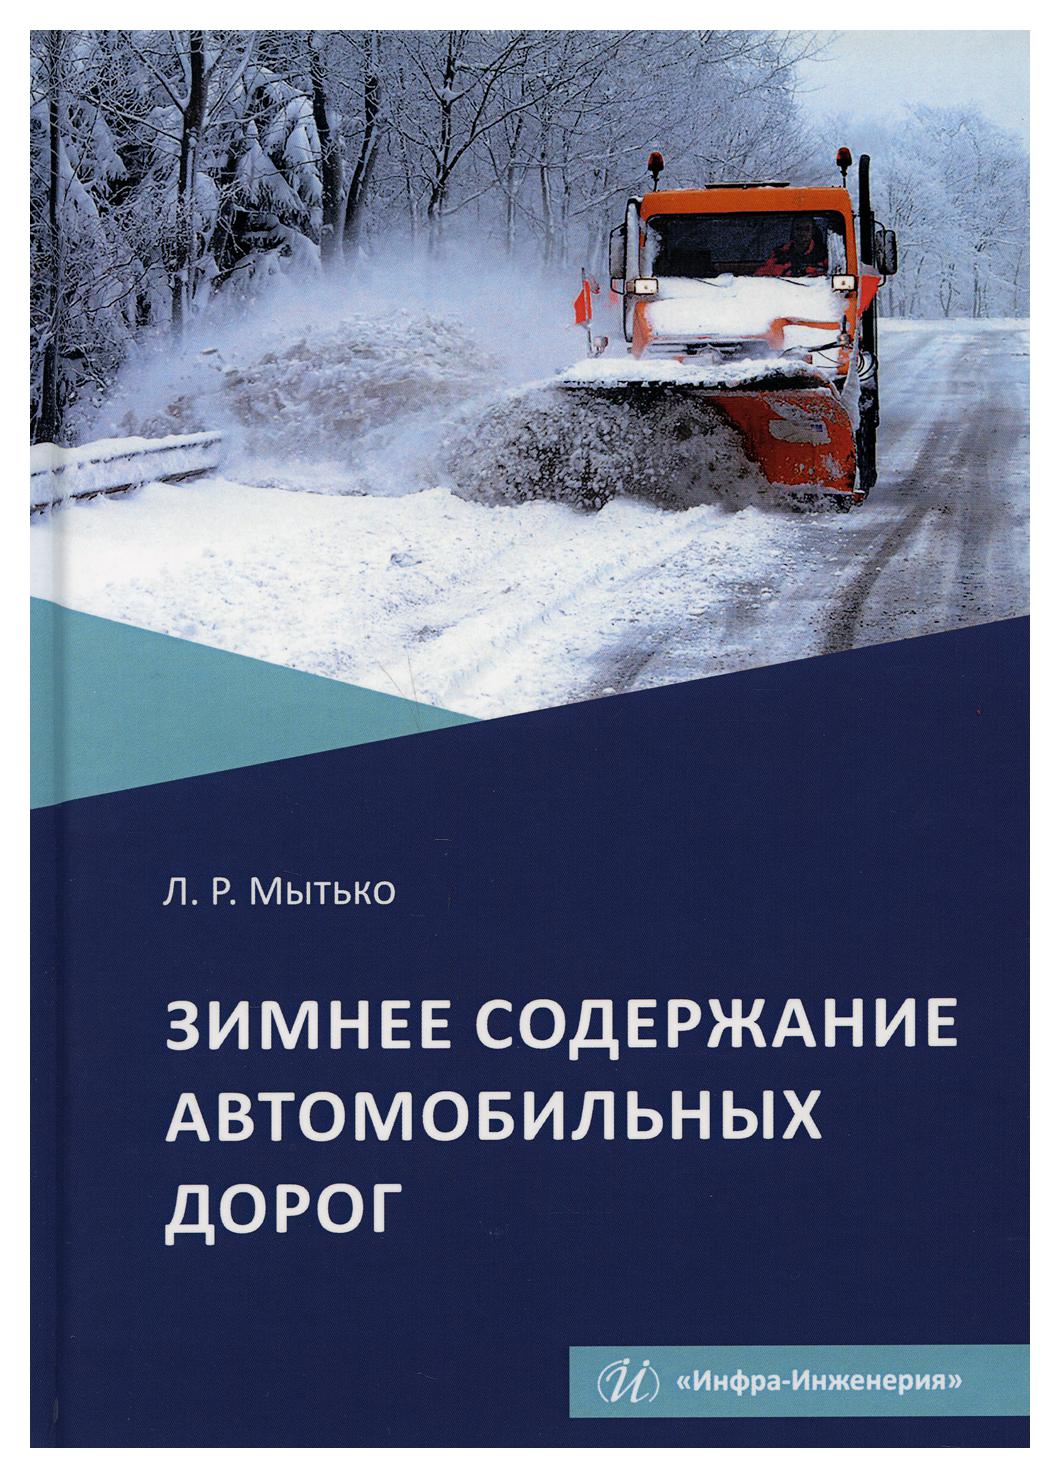 фото Книга зимнее содержание автомобильных дорог инфра-инженерия